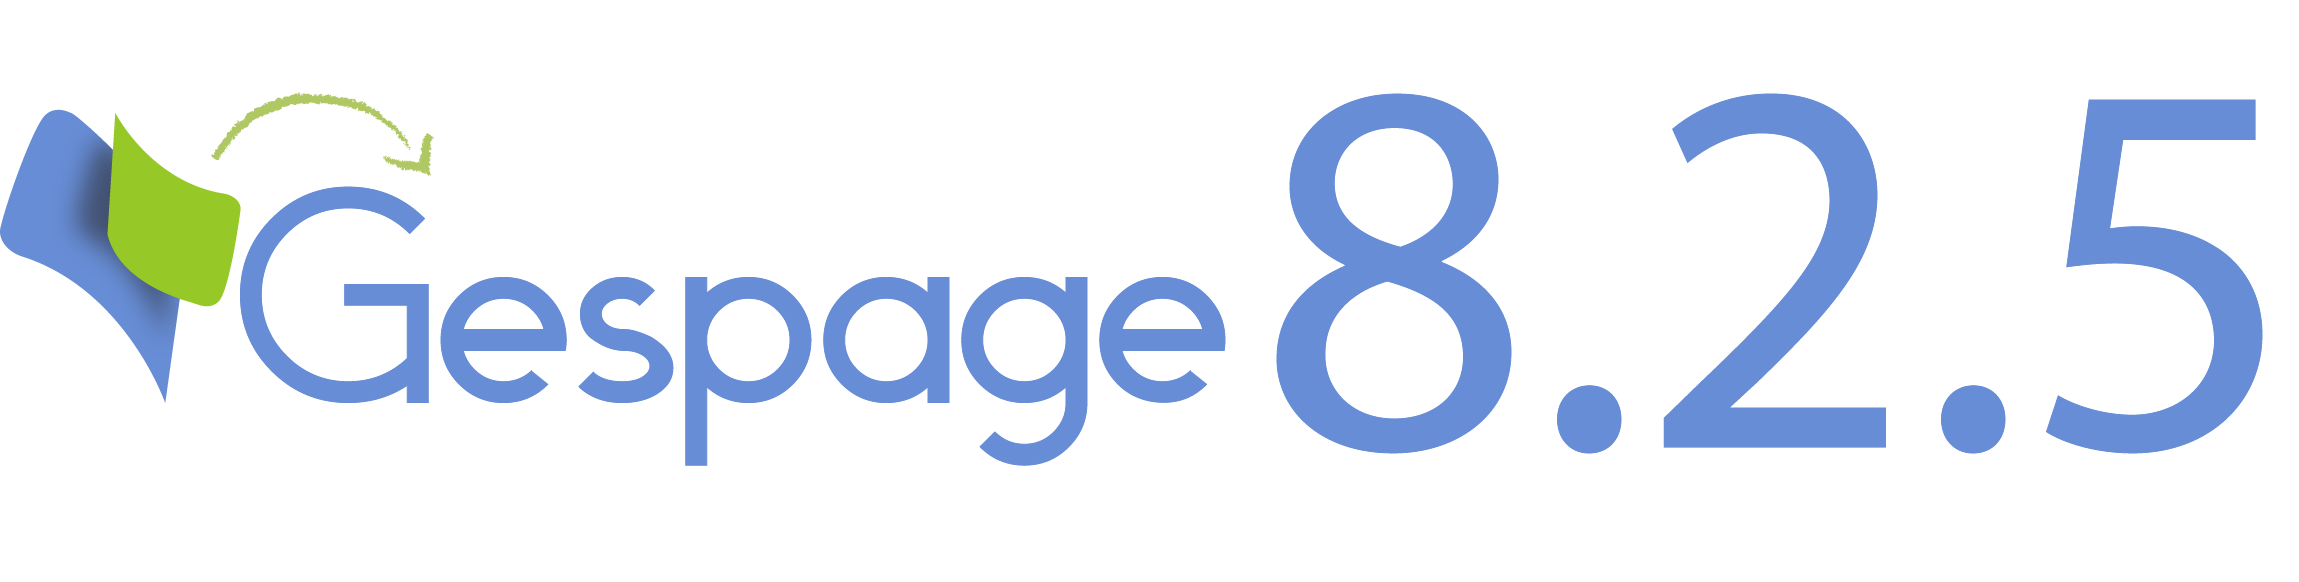 Nouvelle version 8.2.5 de Gespage 1 • Gespage